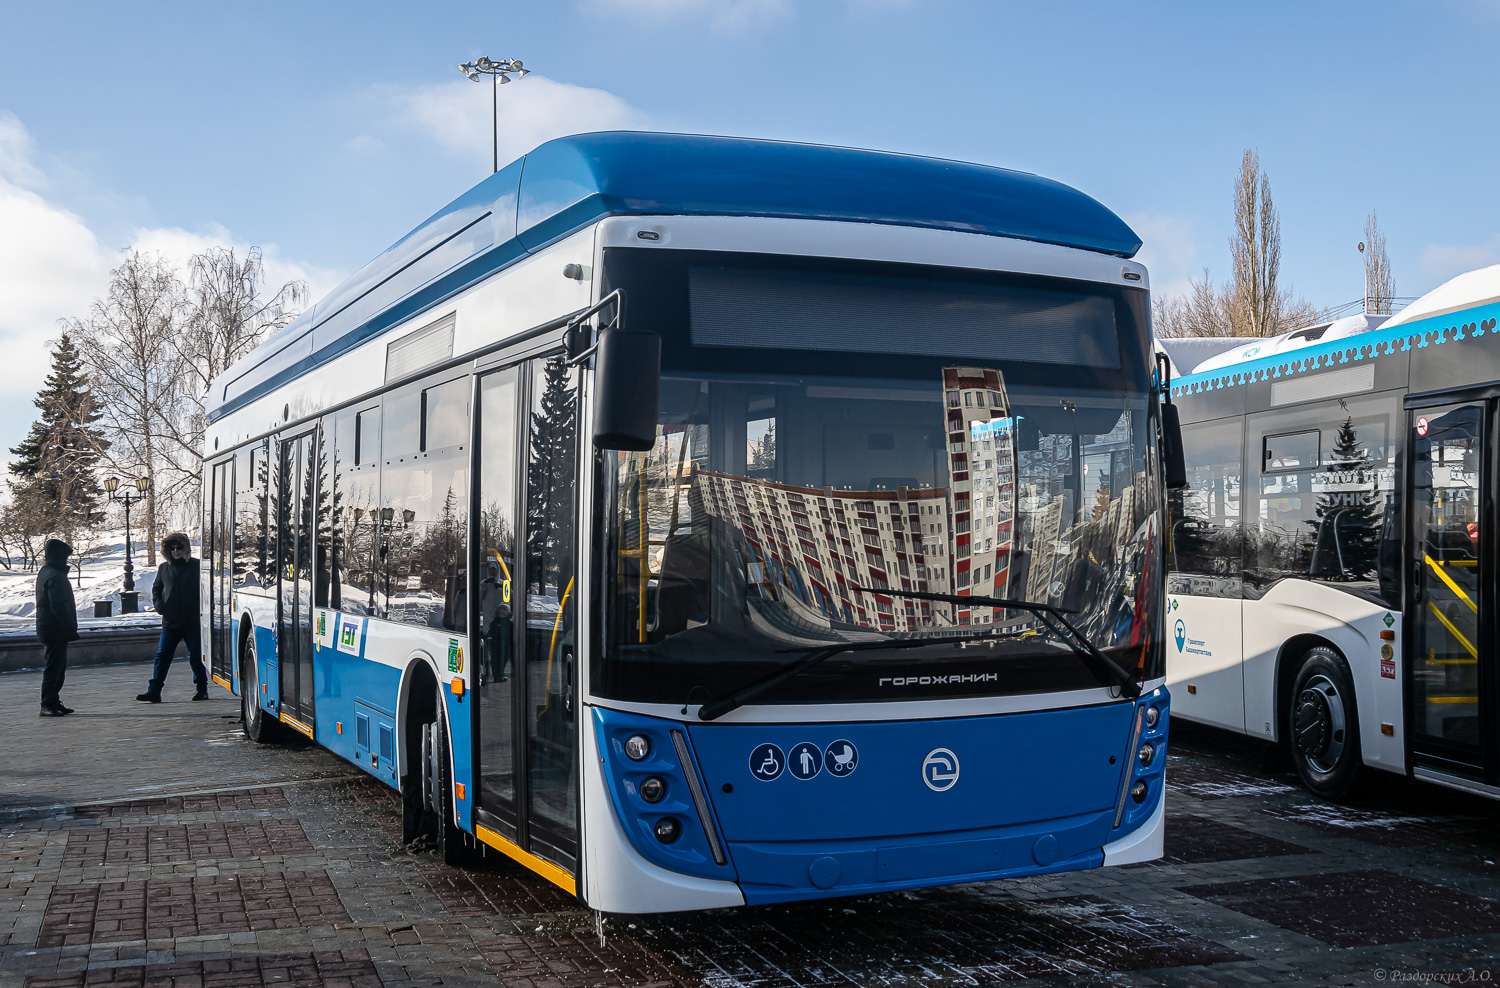 Ufa — New BTZ trolleybuses; Novosibirsk — New trolleybuses